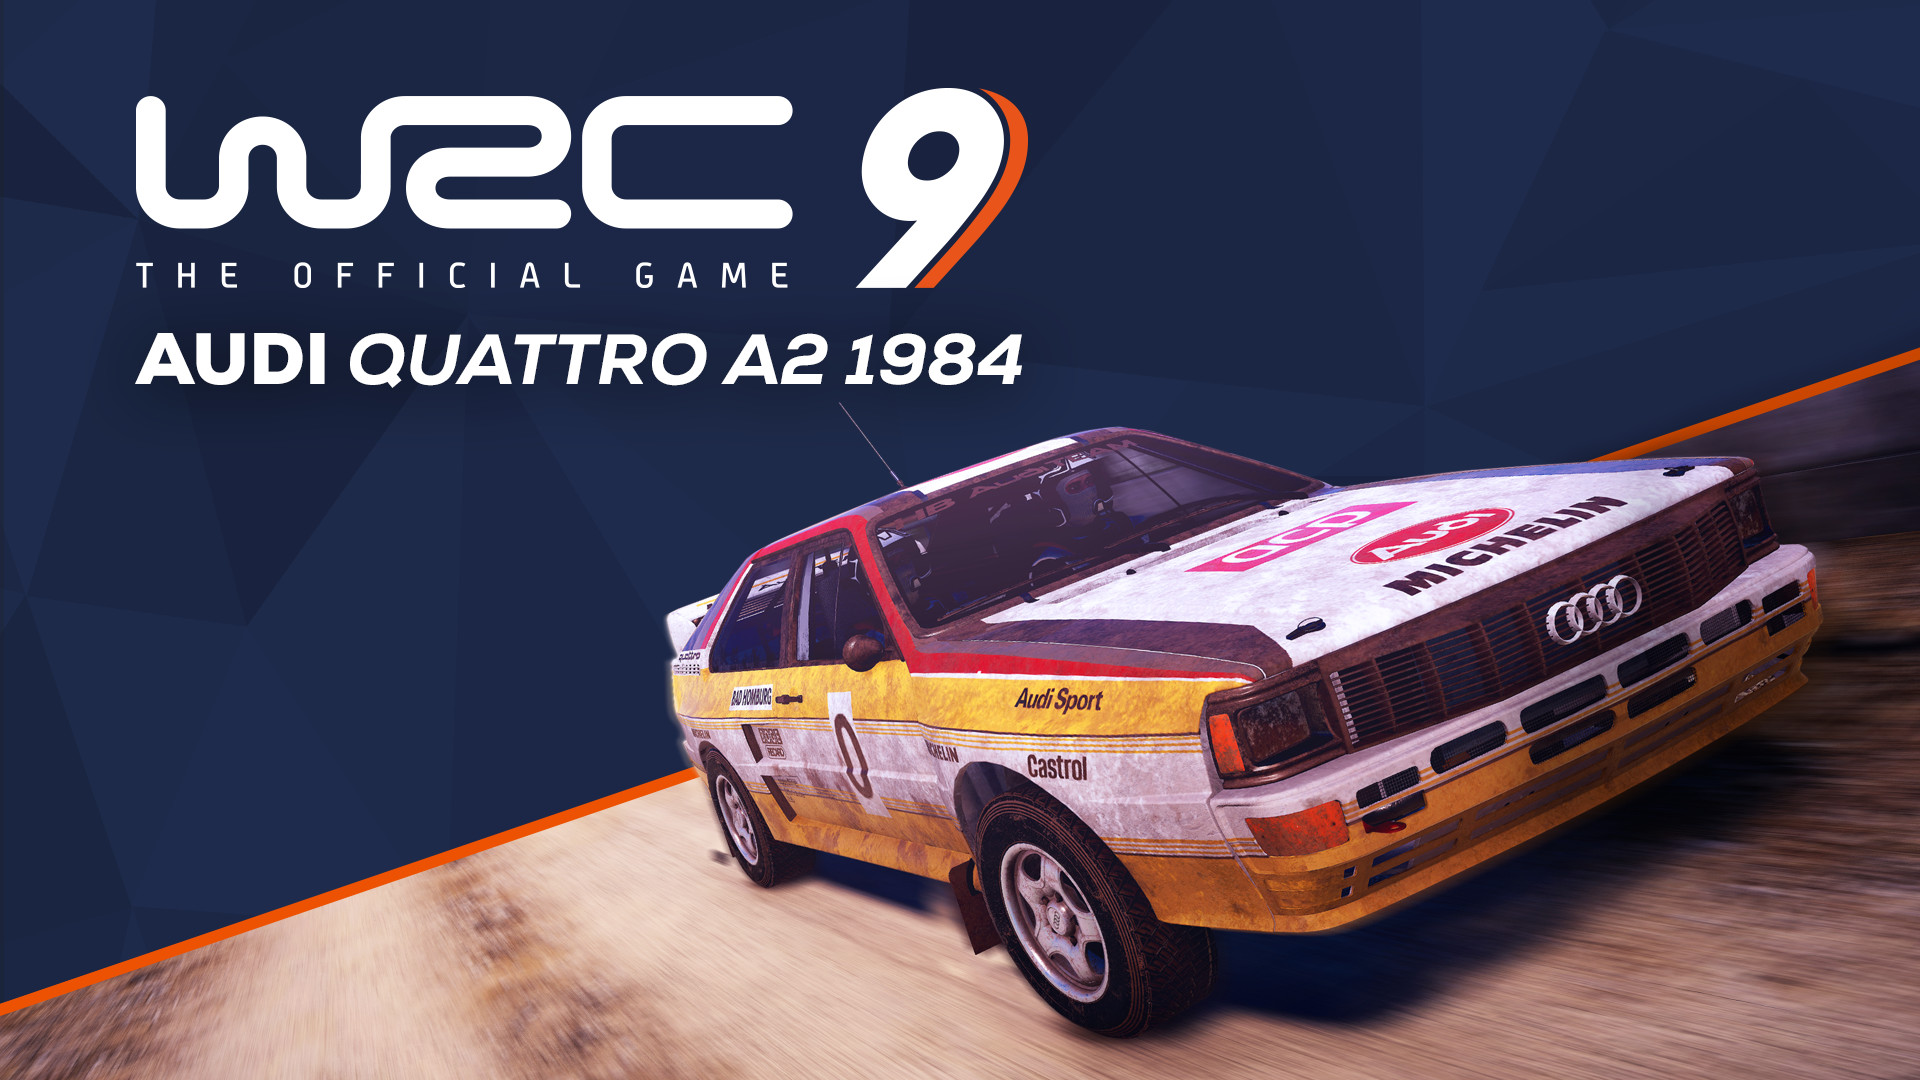 WRC 9 - Audi Quattro A2 1984 DLC Steam CD Key 1.83 USD